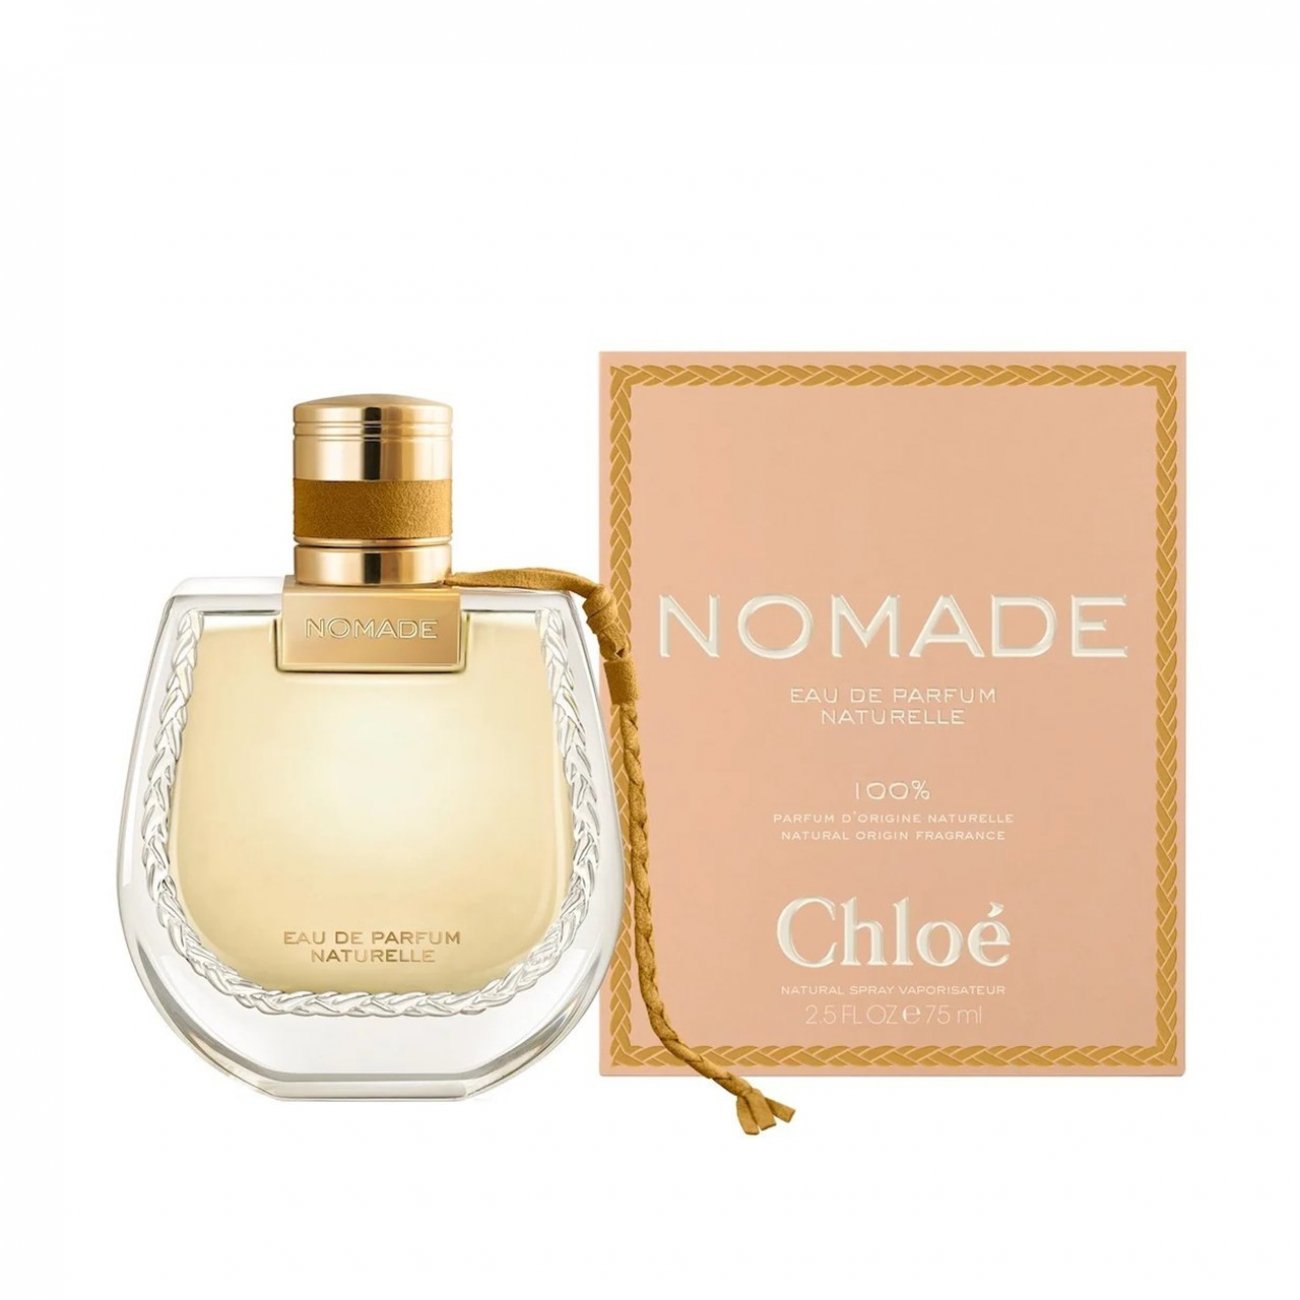 Buy Chloé Nomade Eau de Parfum Naturelle 50ml · World Wide